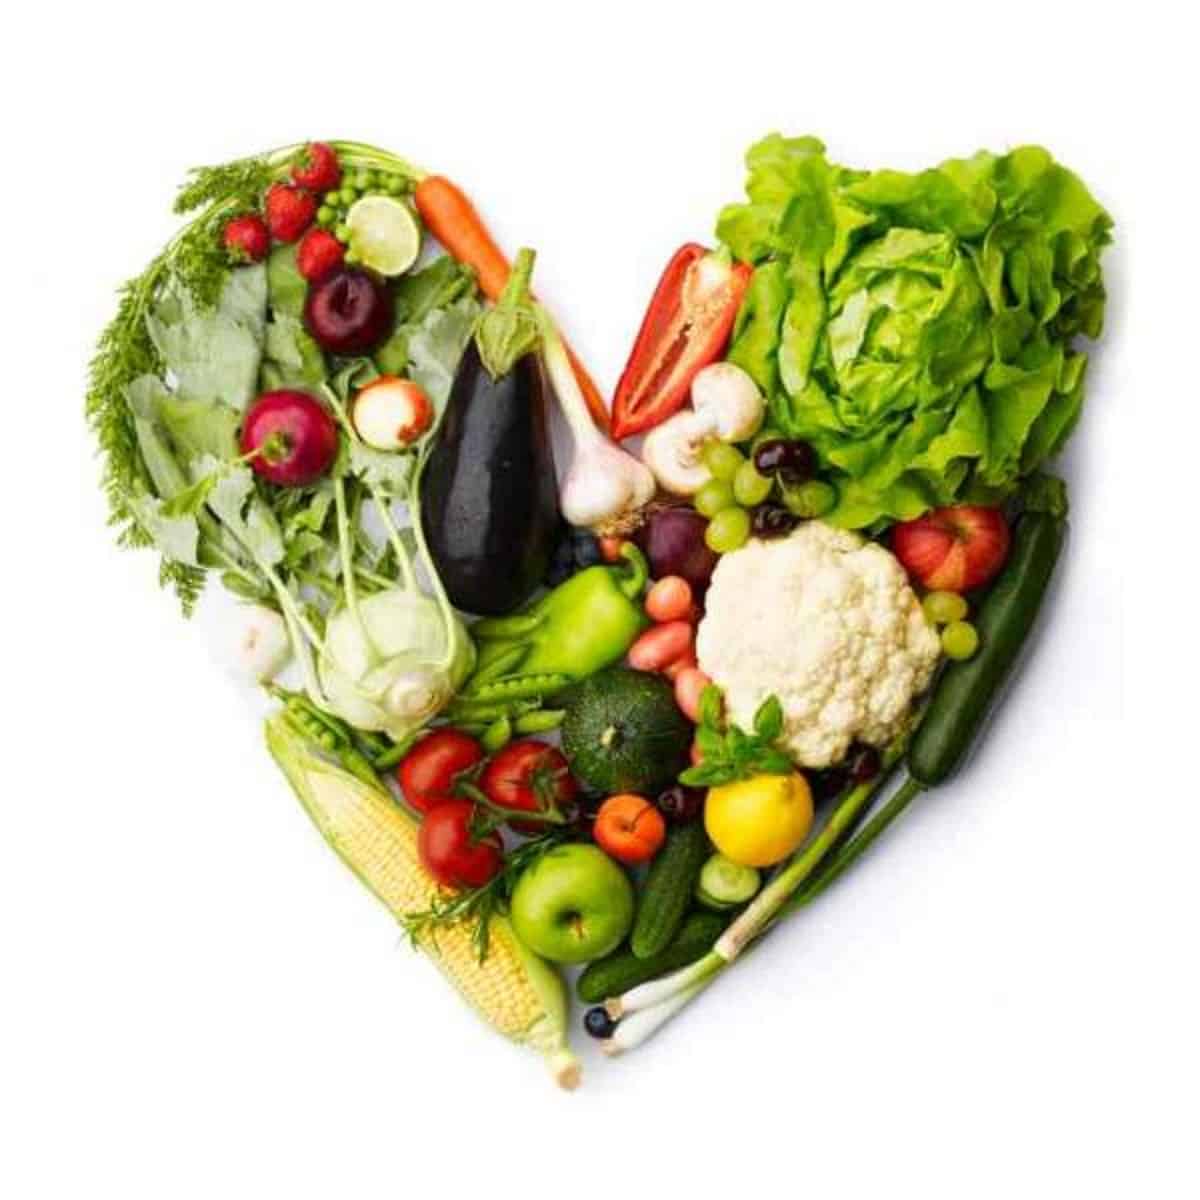 El hipertenso debe comer frutas y vegetales frescos